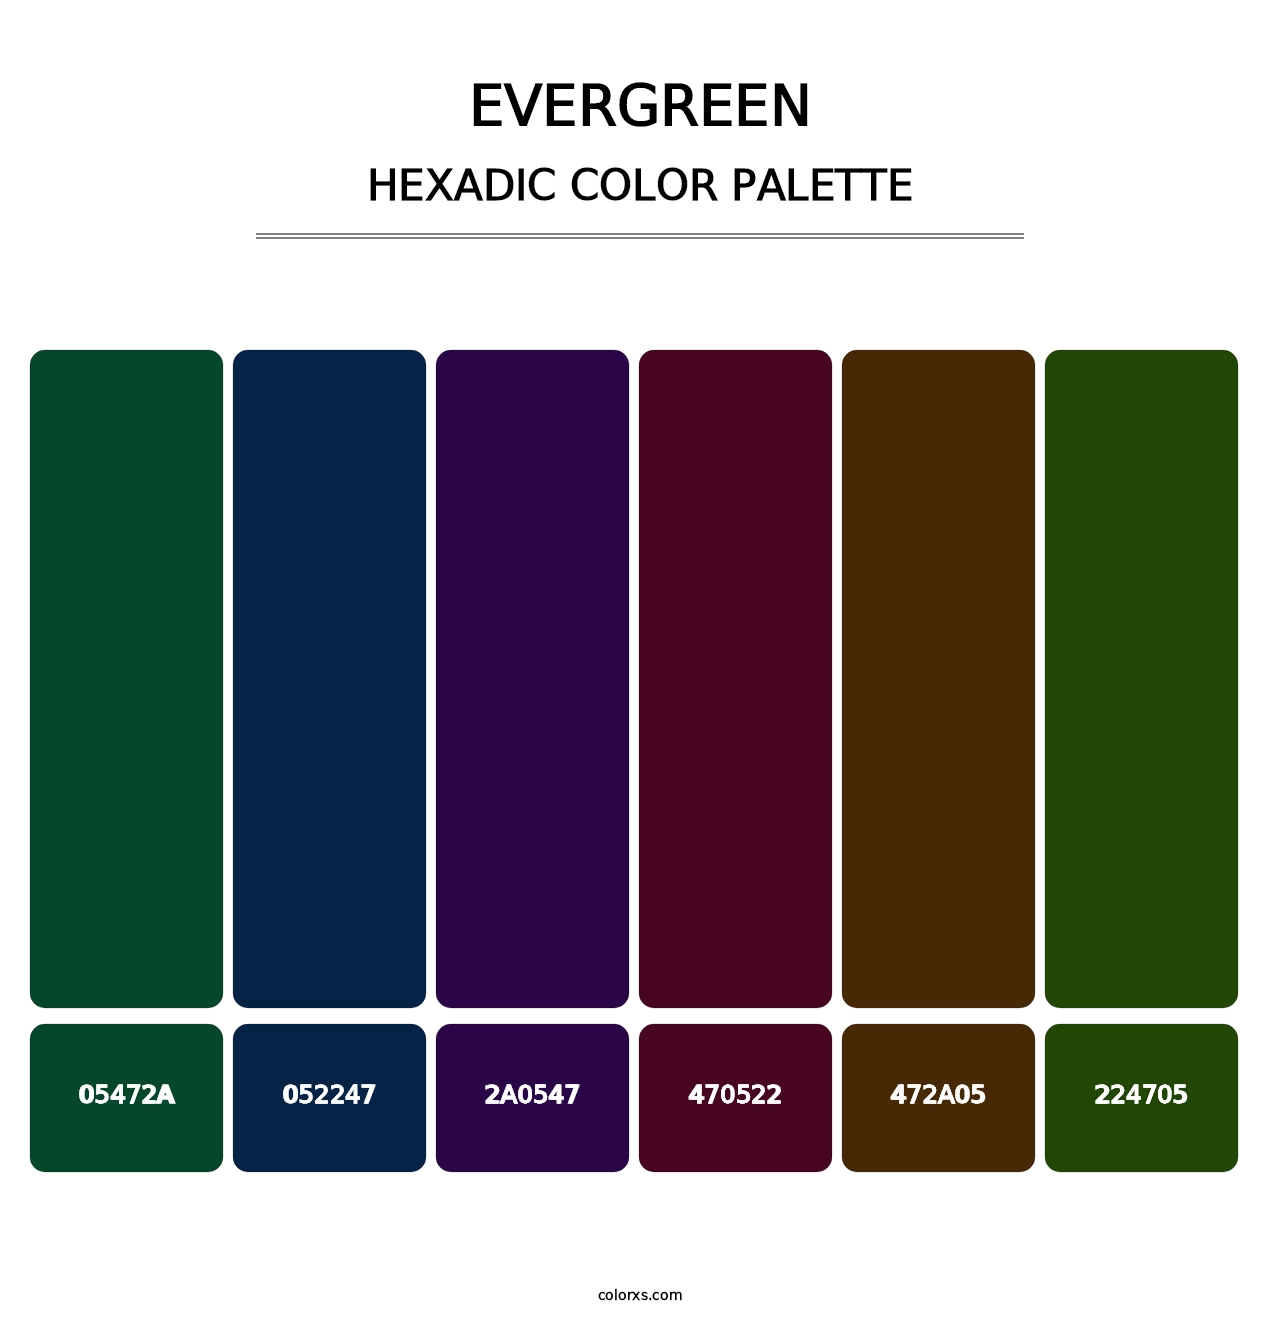 Evergreen - Hexadic Color Palette